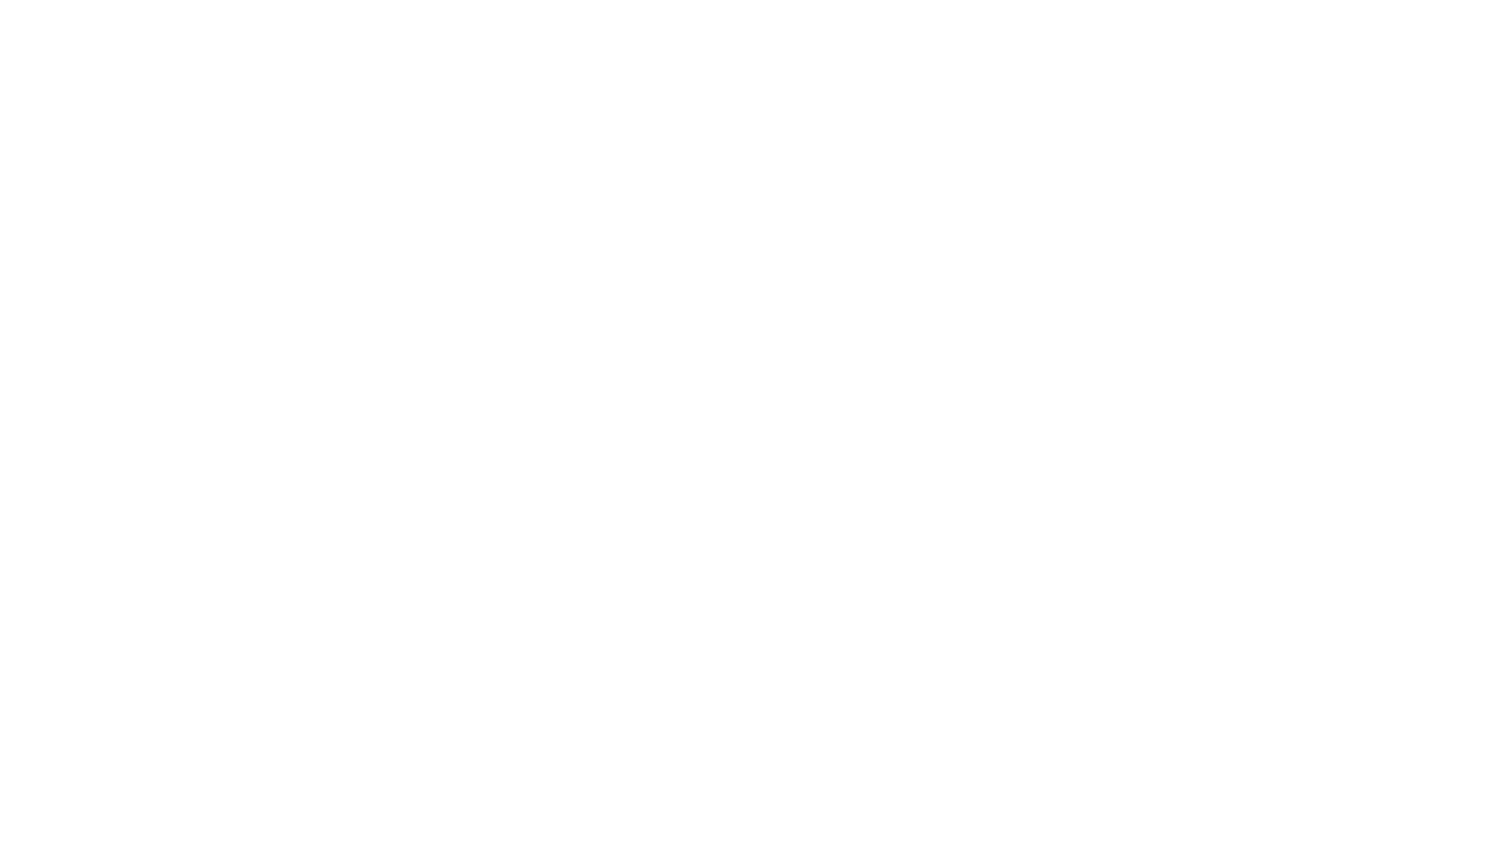 MFlareman